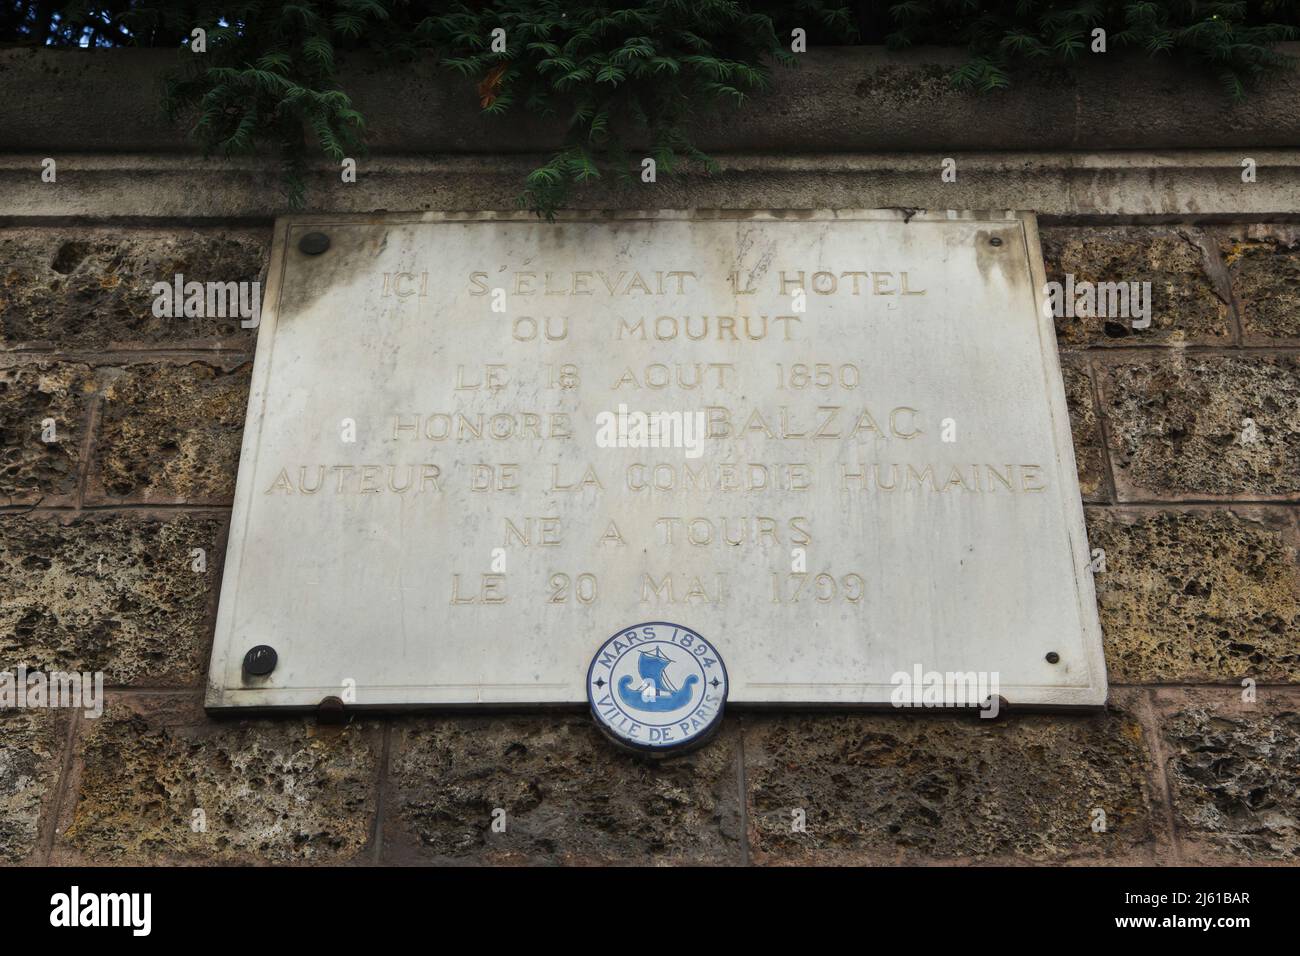 Commemorative plaque devoted to French novelist Honoré de Balzac on the Hôtel Salomon de Rothschild in Paris, France. Honoré de Balzac died in this place on 18 August 1850. Stock Photo